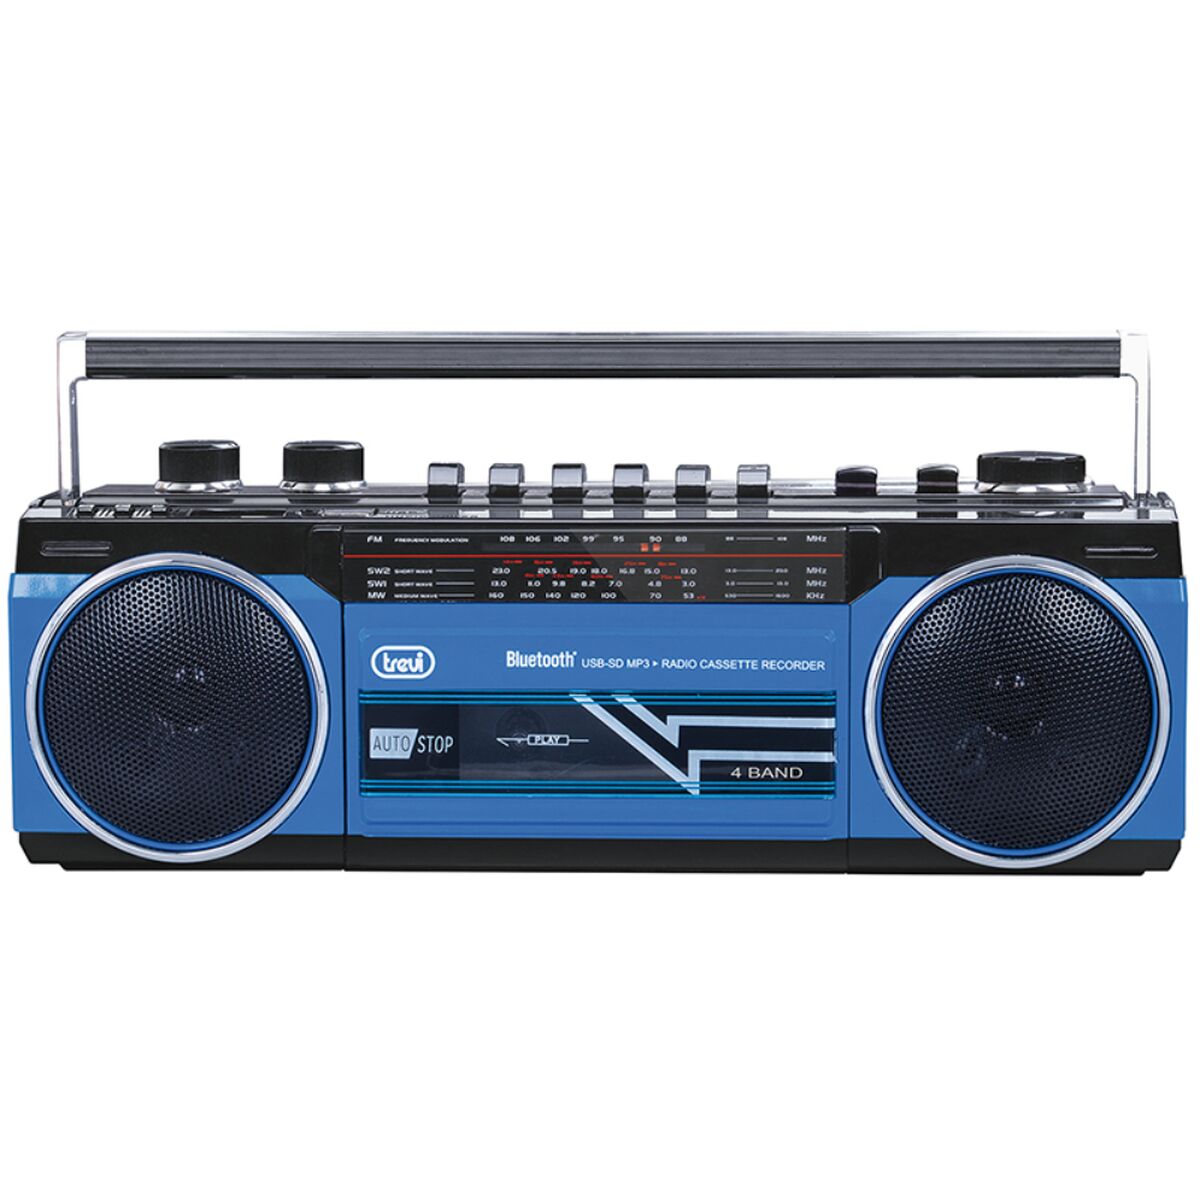 Tragbares Bluetooth-Radio Trevi RR 501 BT Blau Schwarz/Blau